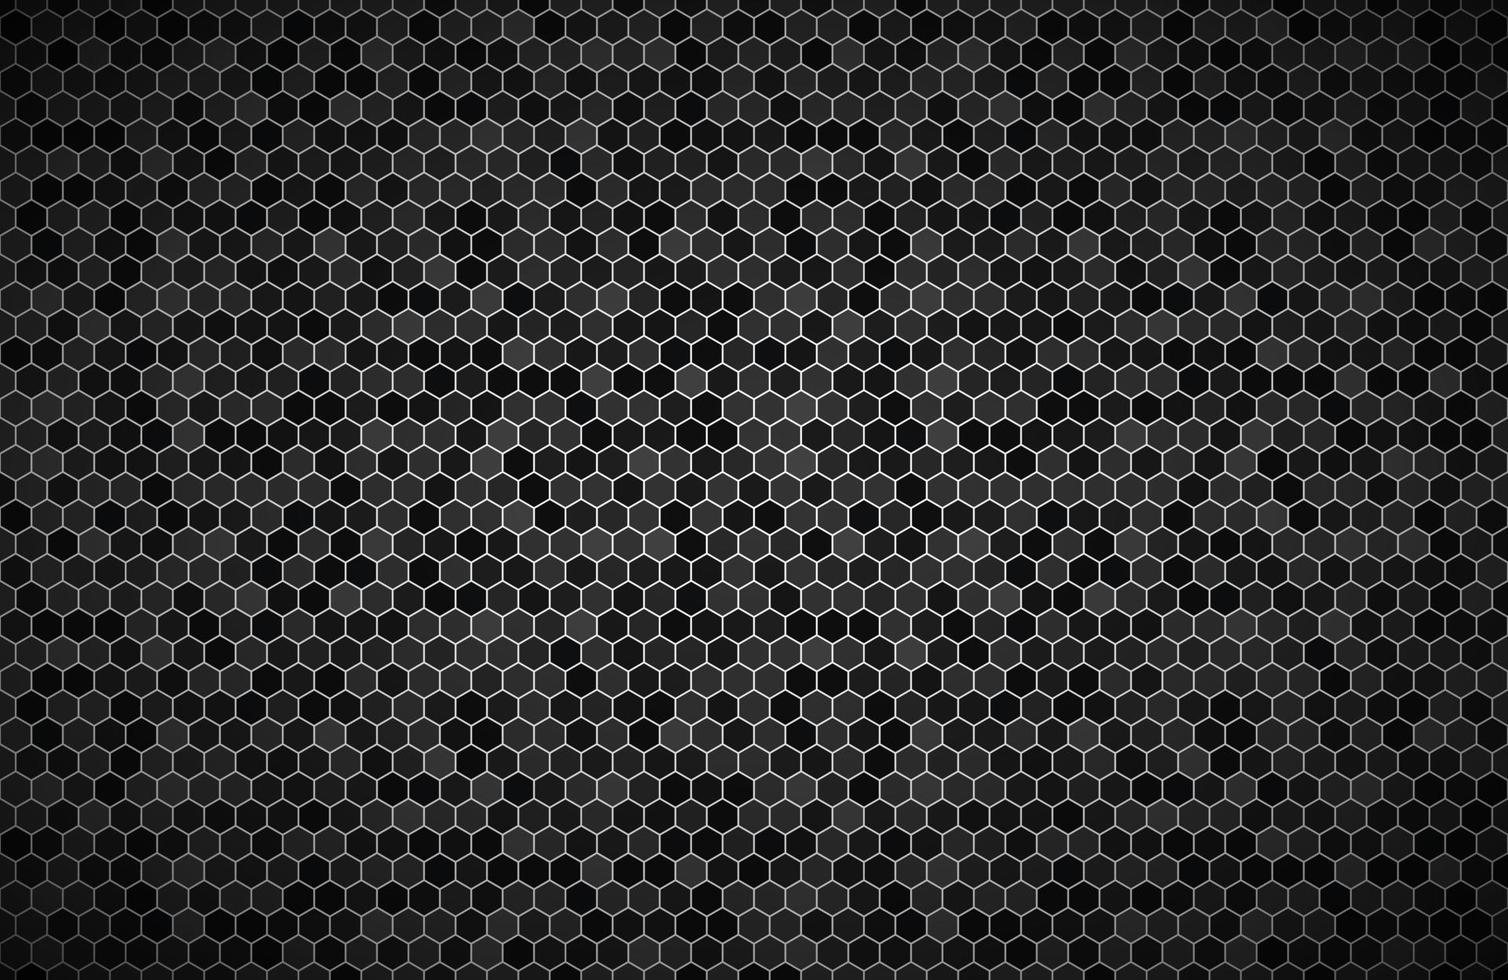 donkere breedbeeldachtergrond met zeshoeken met verschillende transparanten moderne zwarte geometrisch ontwerp eenvoudige vectorillustratie vector